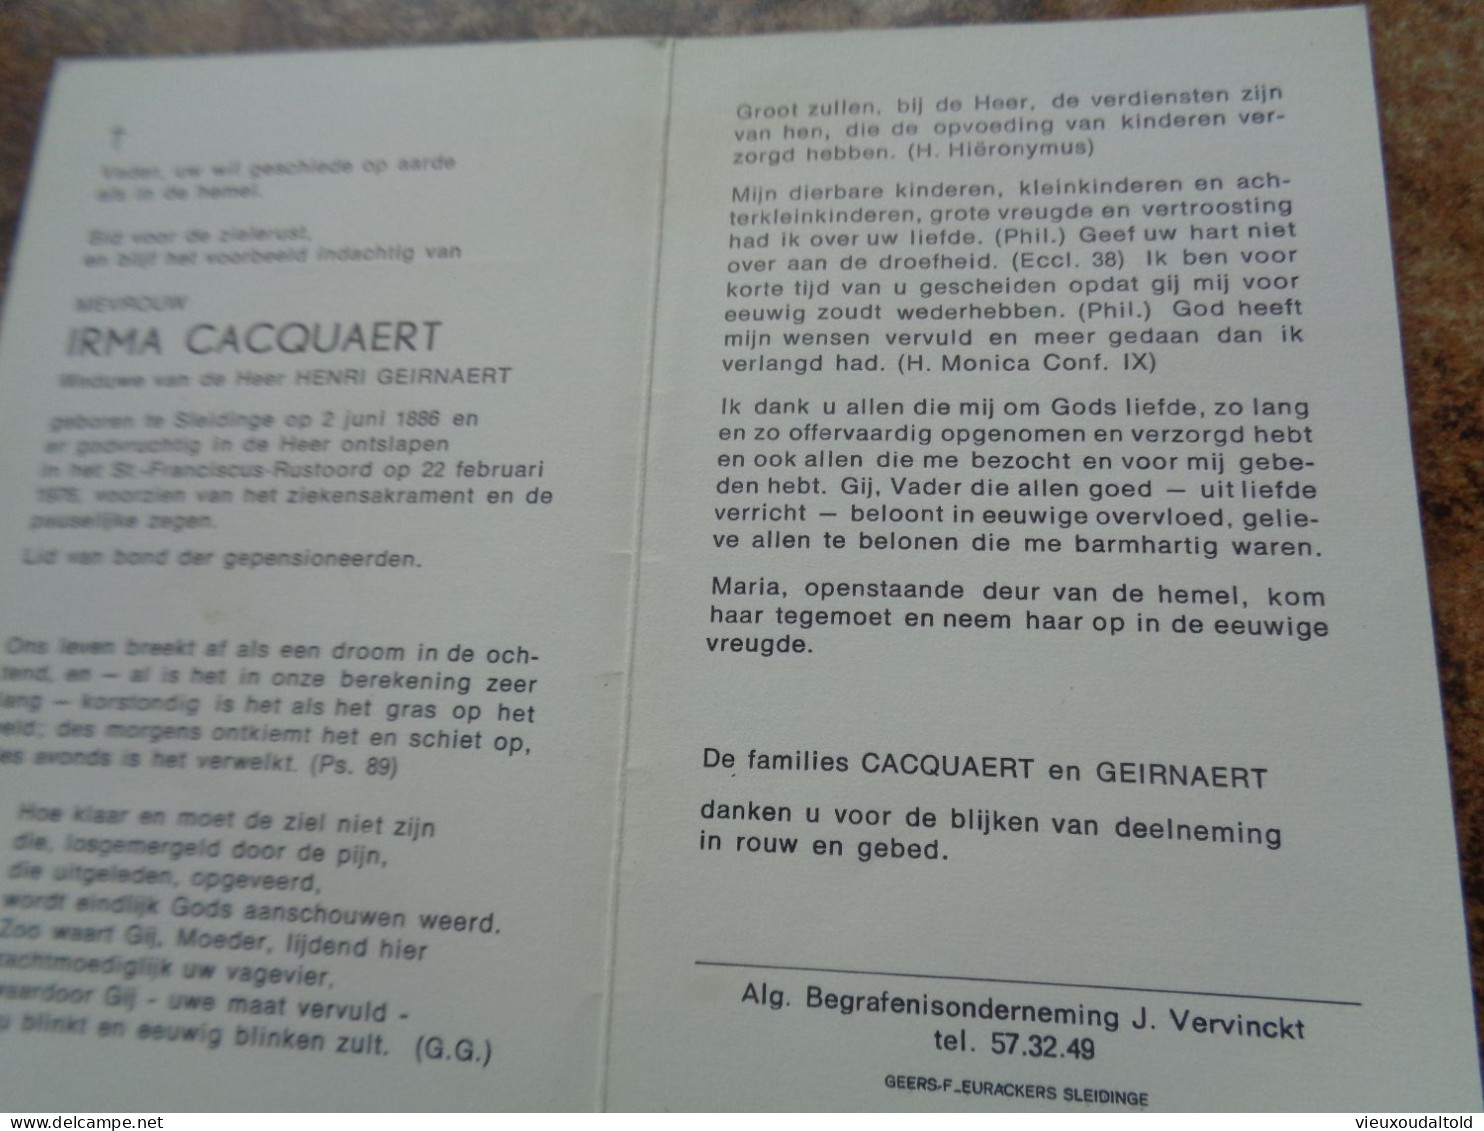 Doodsprentje/Bidprentje  IRMA CACQUAERT   Sleidinge 1886-1976  (Wwe Henri GEIRNAERT) - Religion &  Esoterik